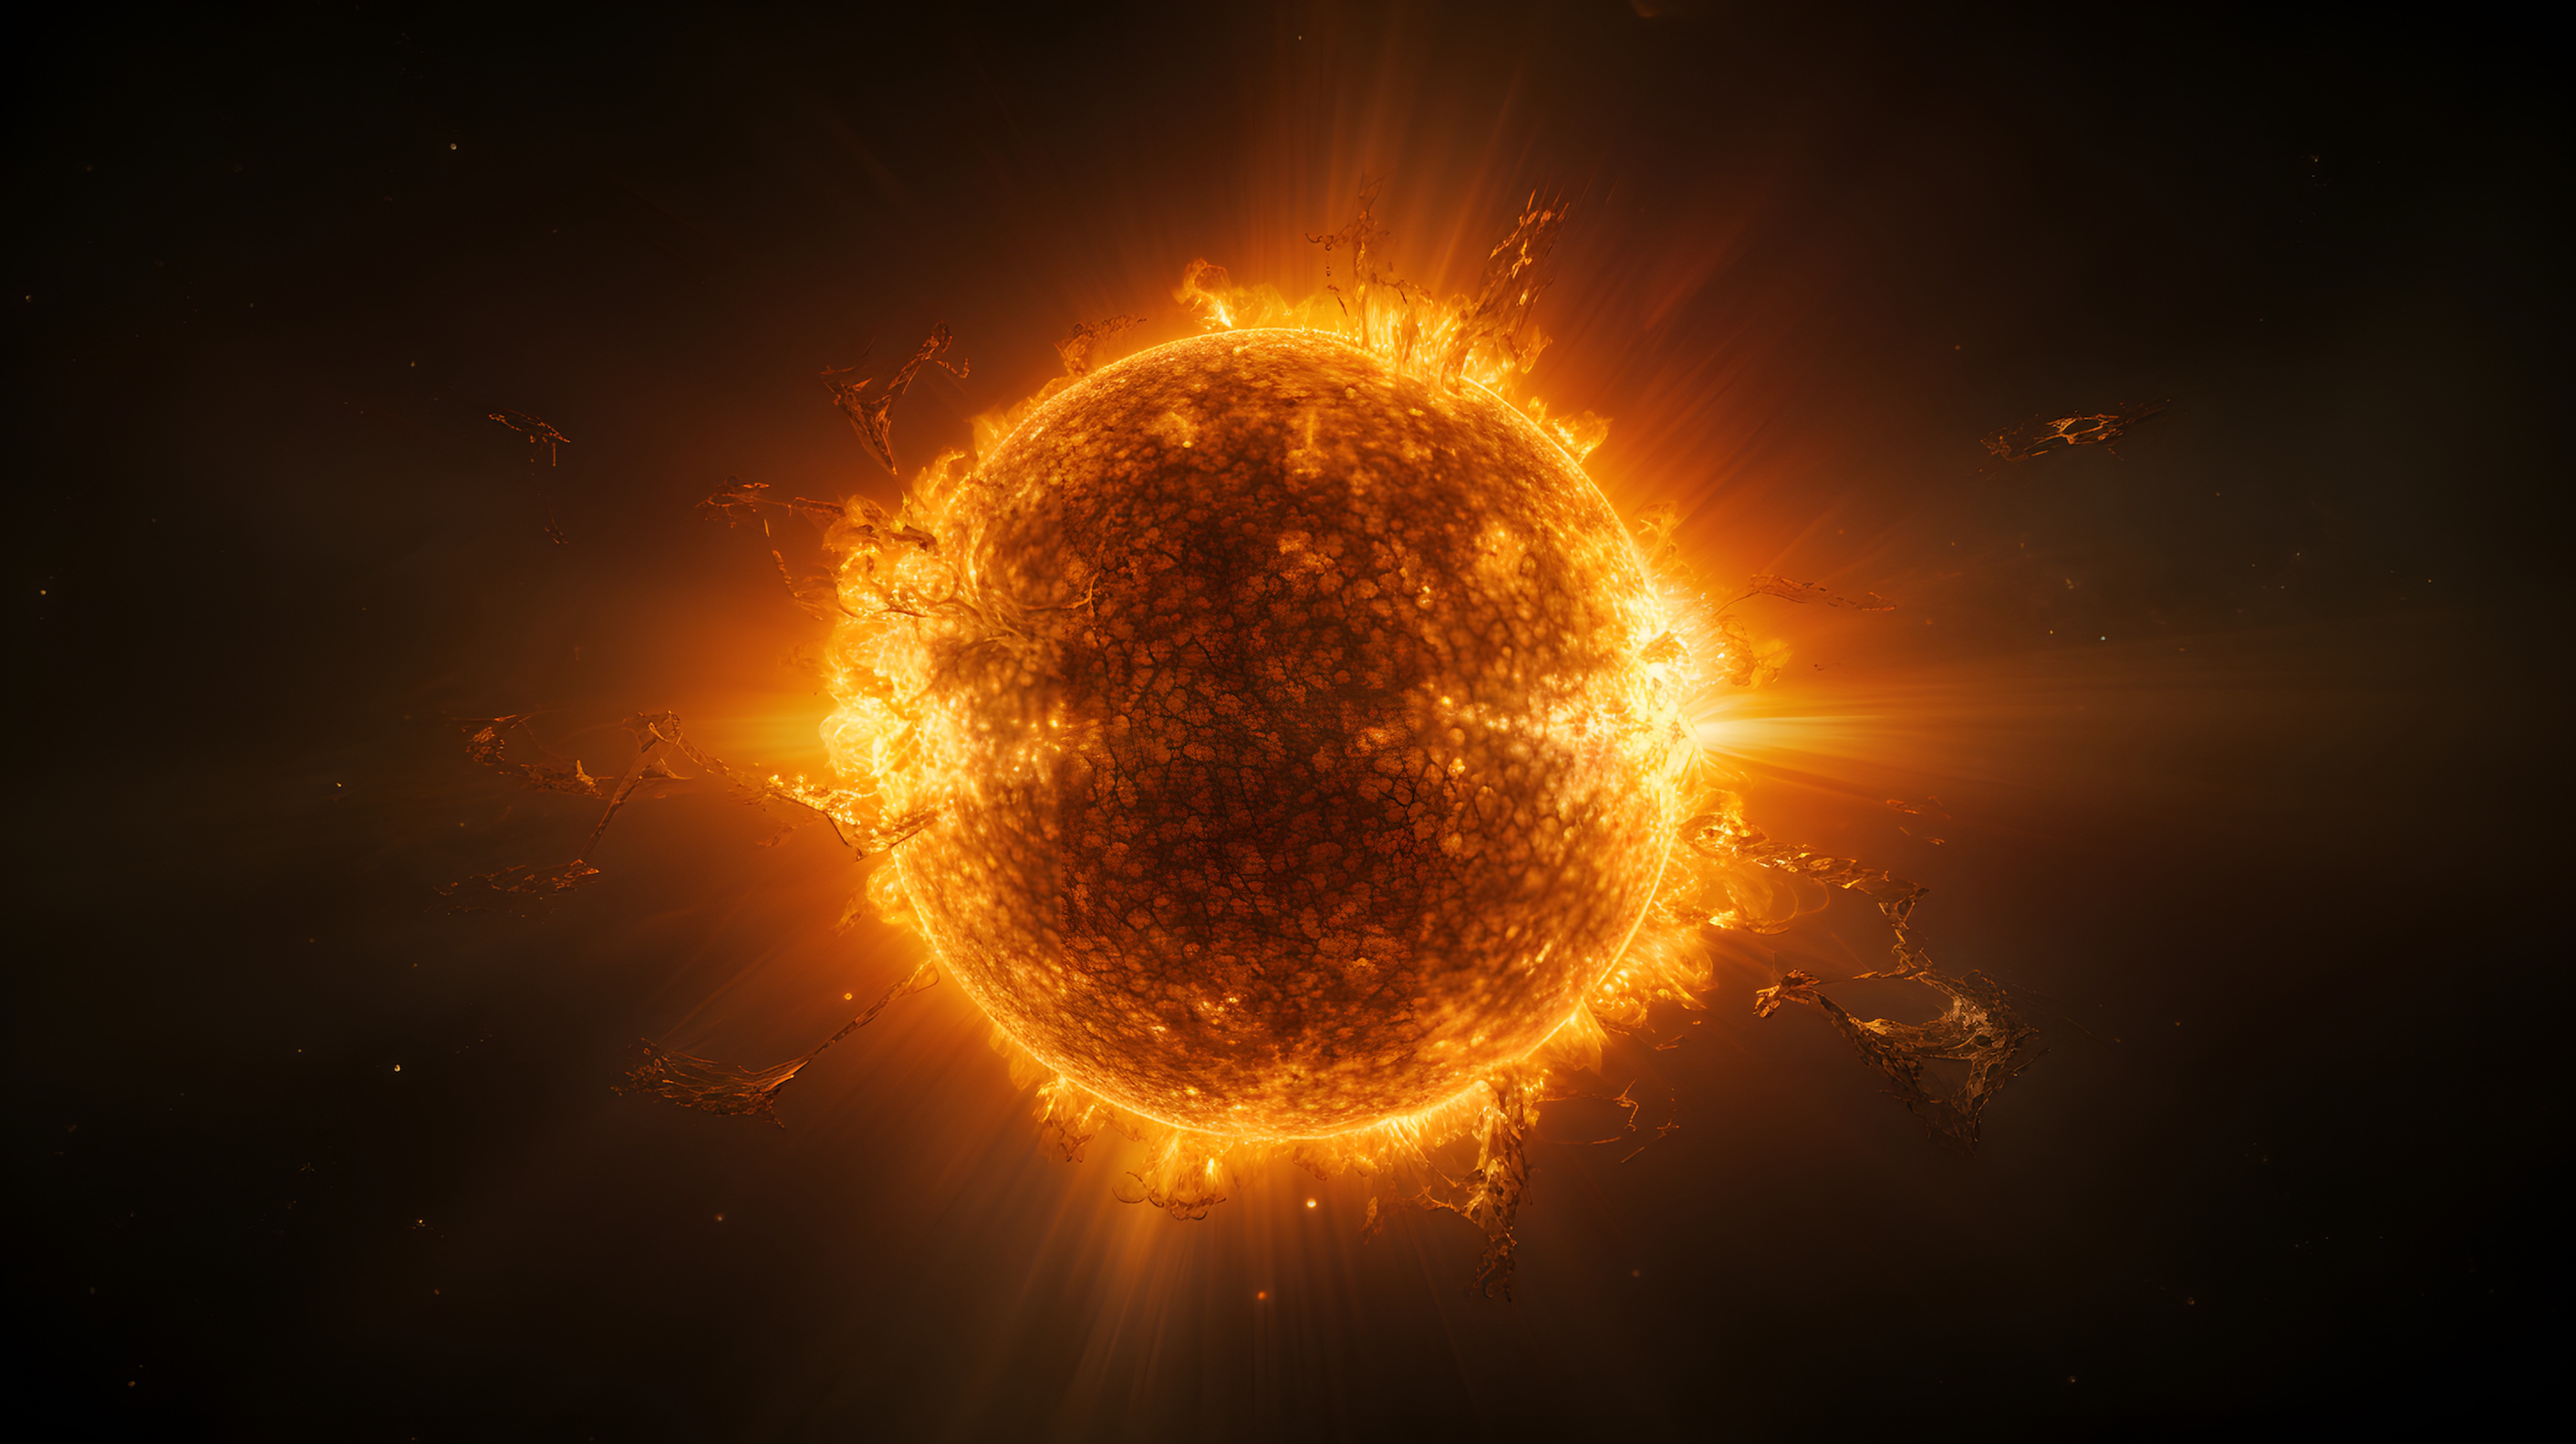 Les jeunes étoiles seraient également capable d'avaler des planètes. © rodrigodm22, Adobe Stock (image générée à l'aide de l'IA)